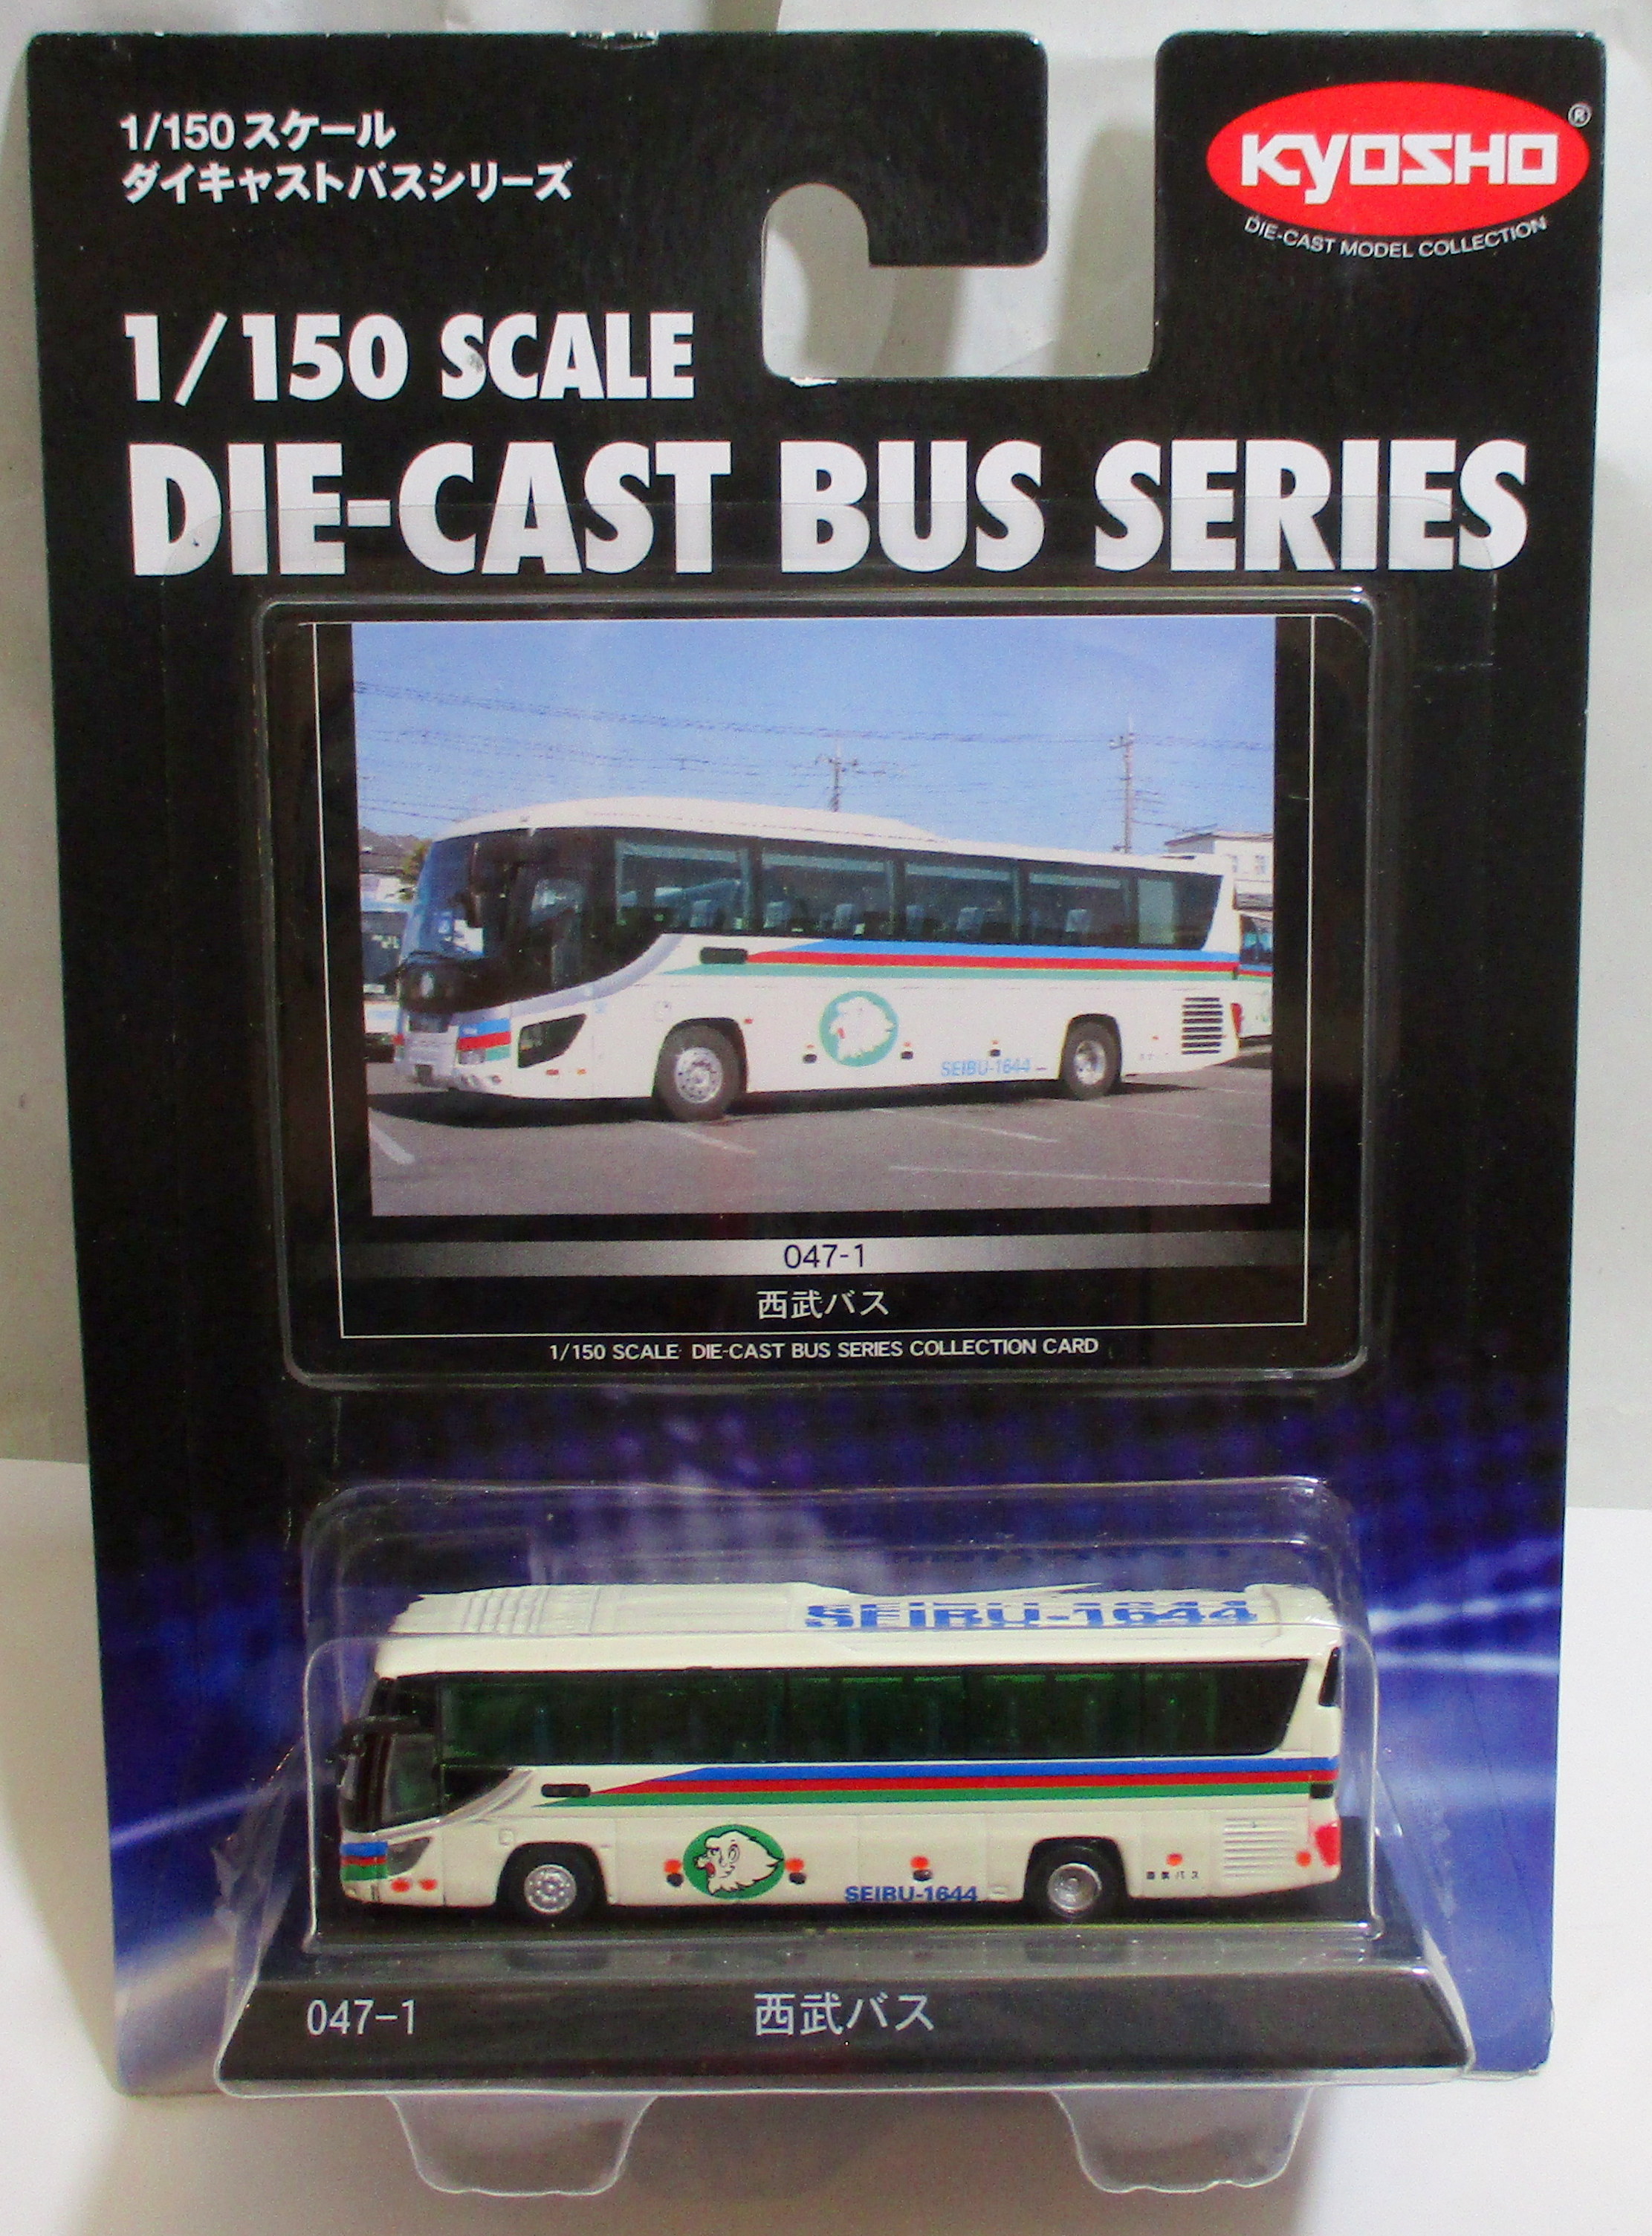 全店販売中 京商 150 ダイキャストバスシリーズ 路線バス